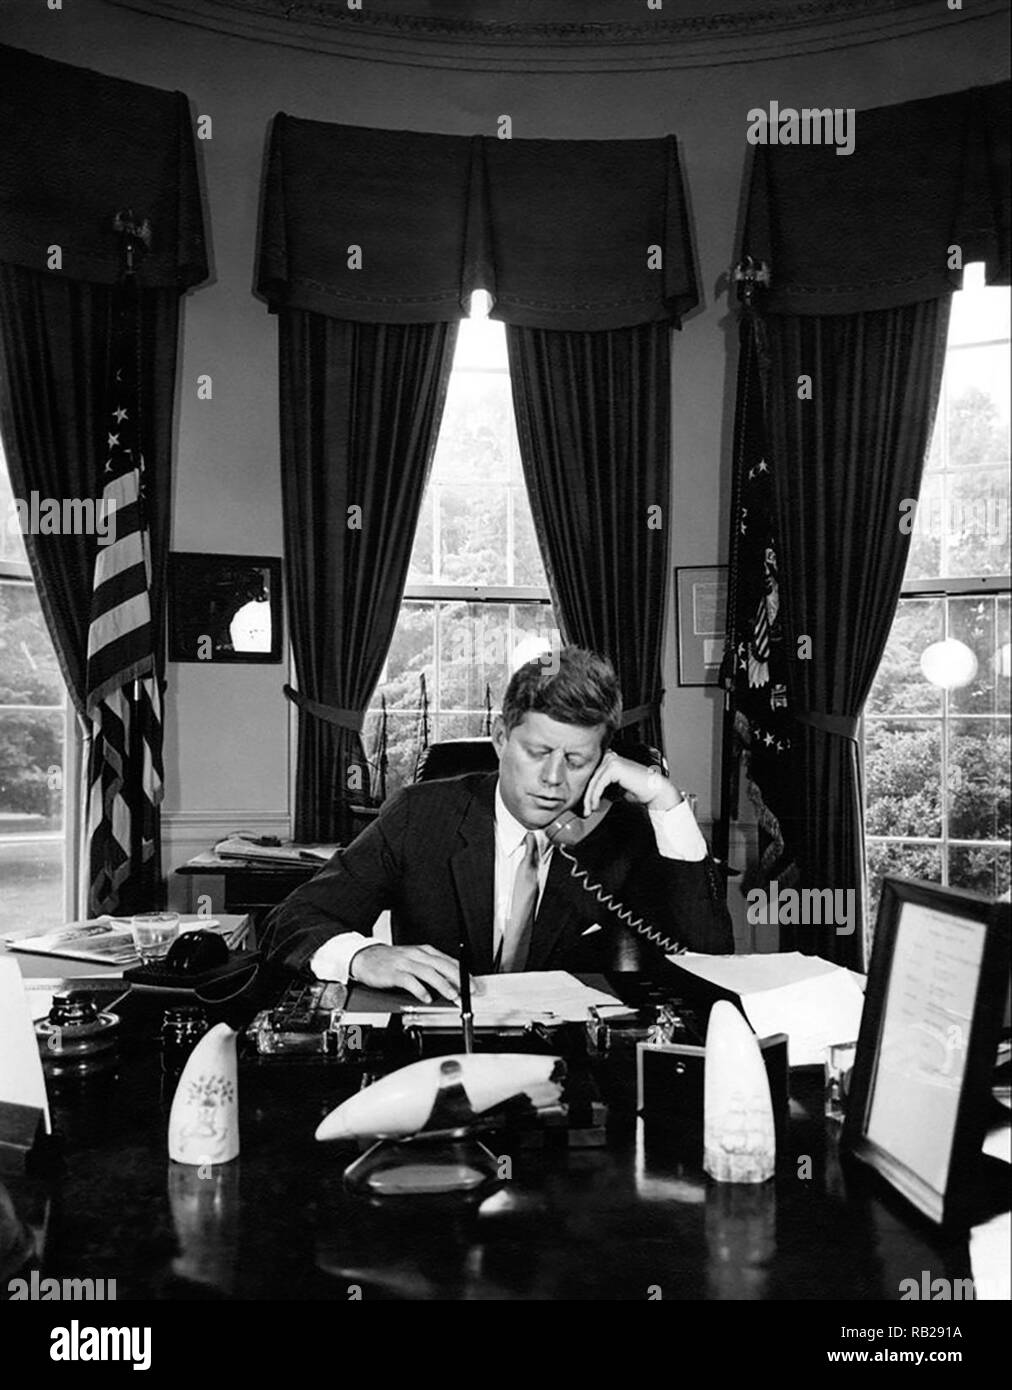 Präsident John F. Kennedy Adressierung der AMVETS Convention in New York City per Telefon aus dem Oval Office im Weißen Haus am 23. August 1962. Stockfoto